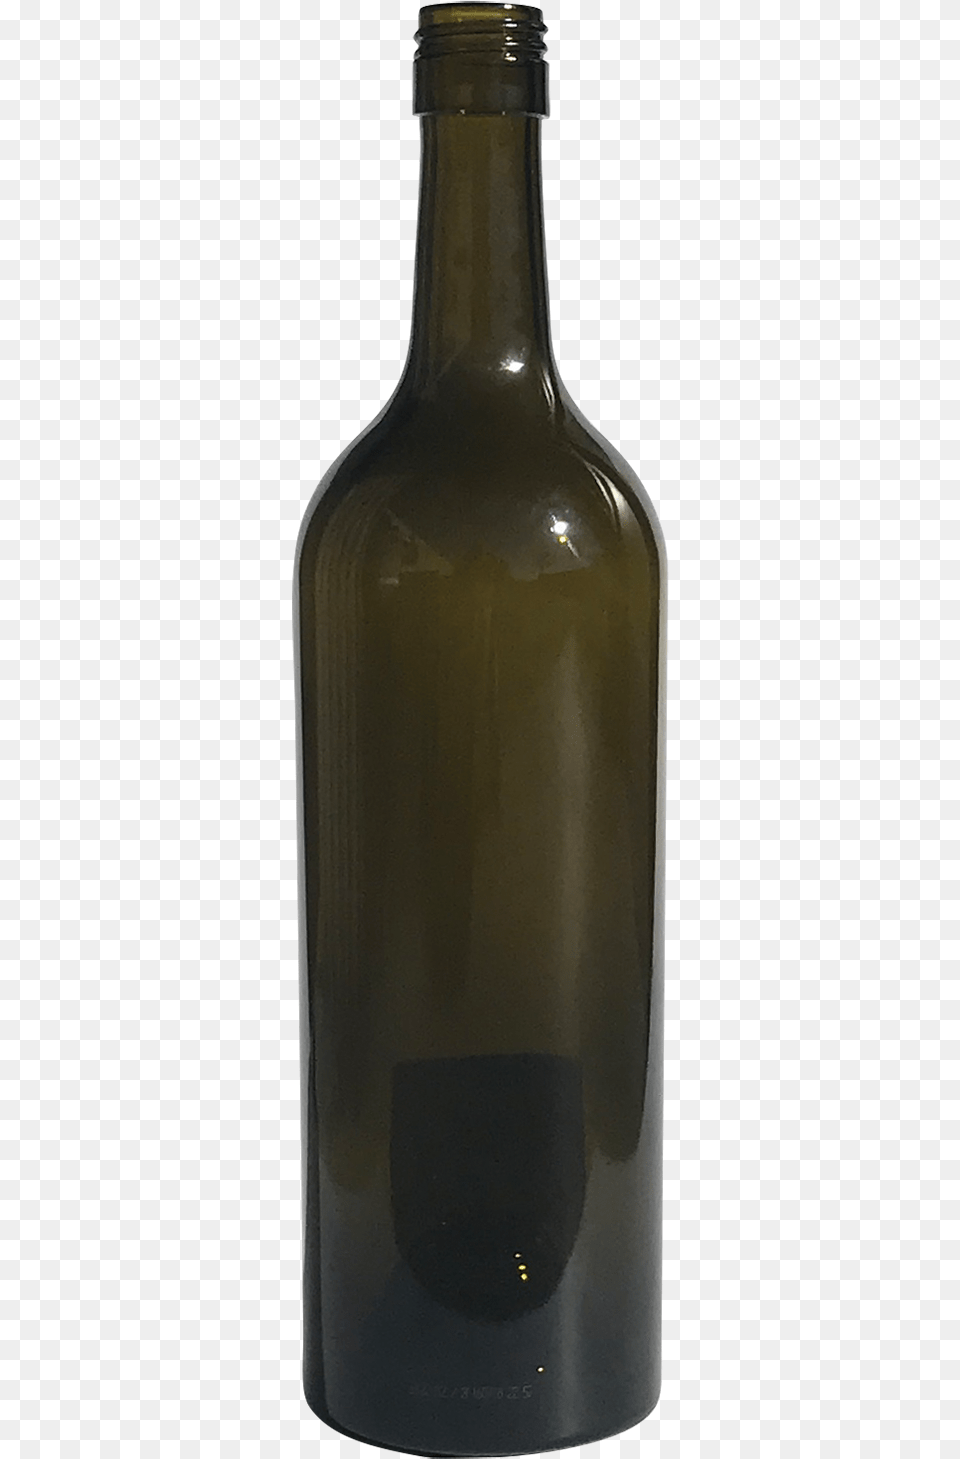 Bottle Of Wine, Alcohol, Beverage, Liquor, Wine Bottle Png